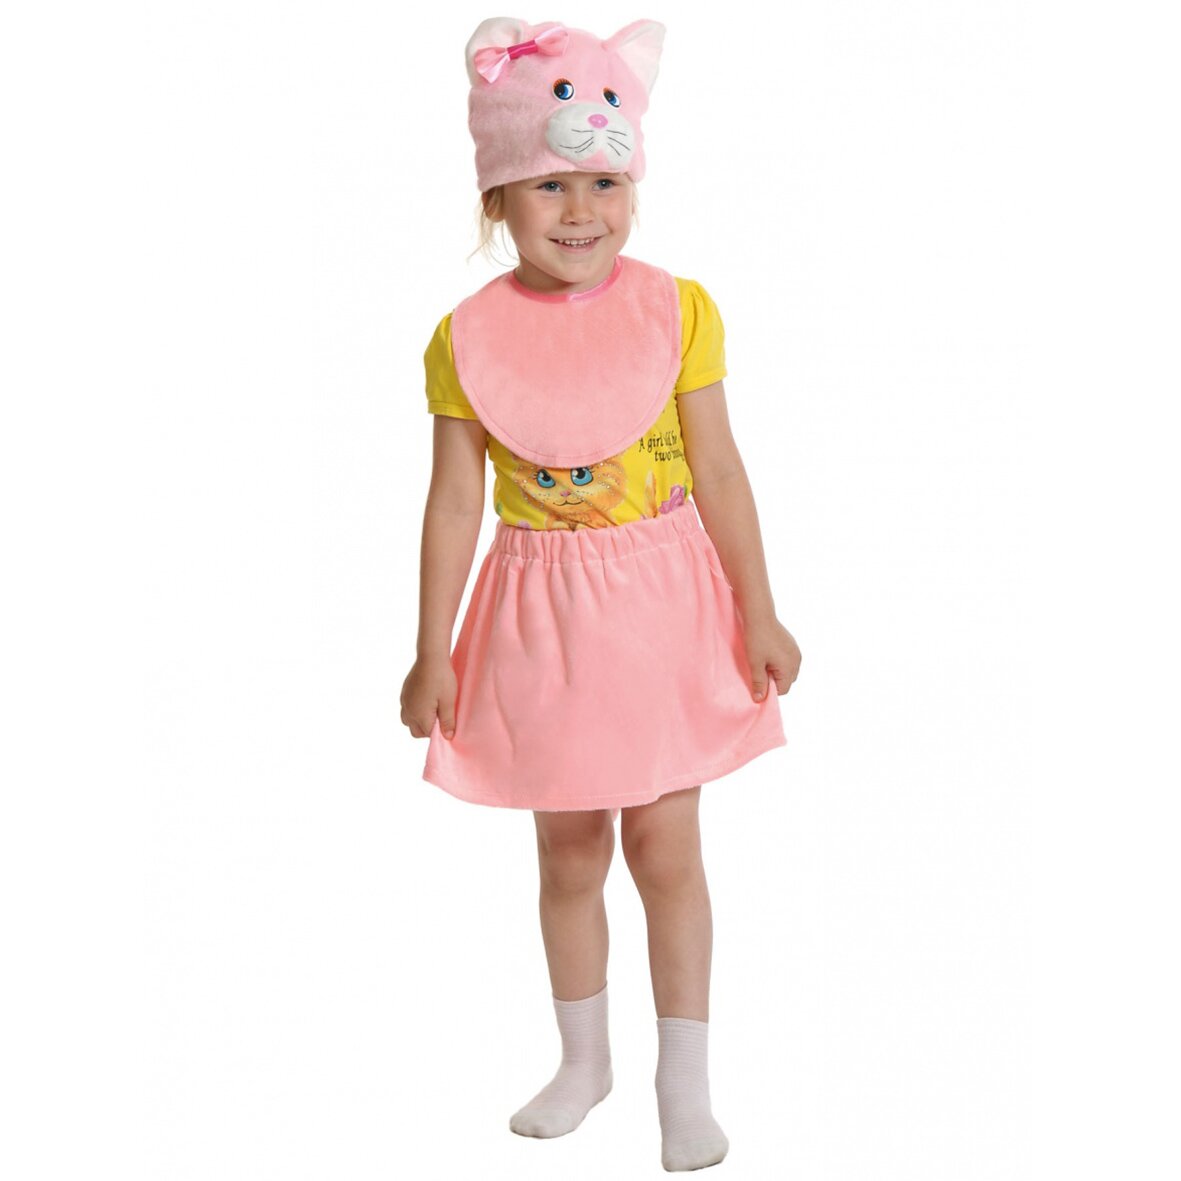 Карнавальный костюм Кошечка, шапочка, манишка, юбка, плюш, 3-5 лет, розовый, рост 92-116, 389129